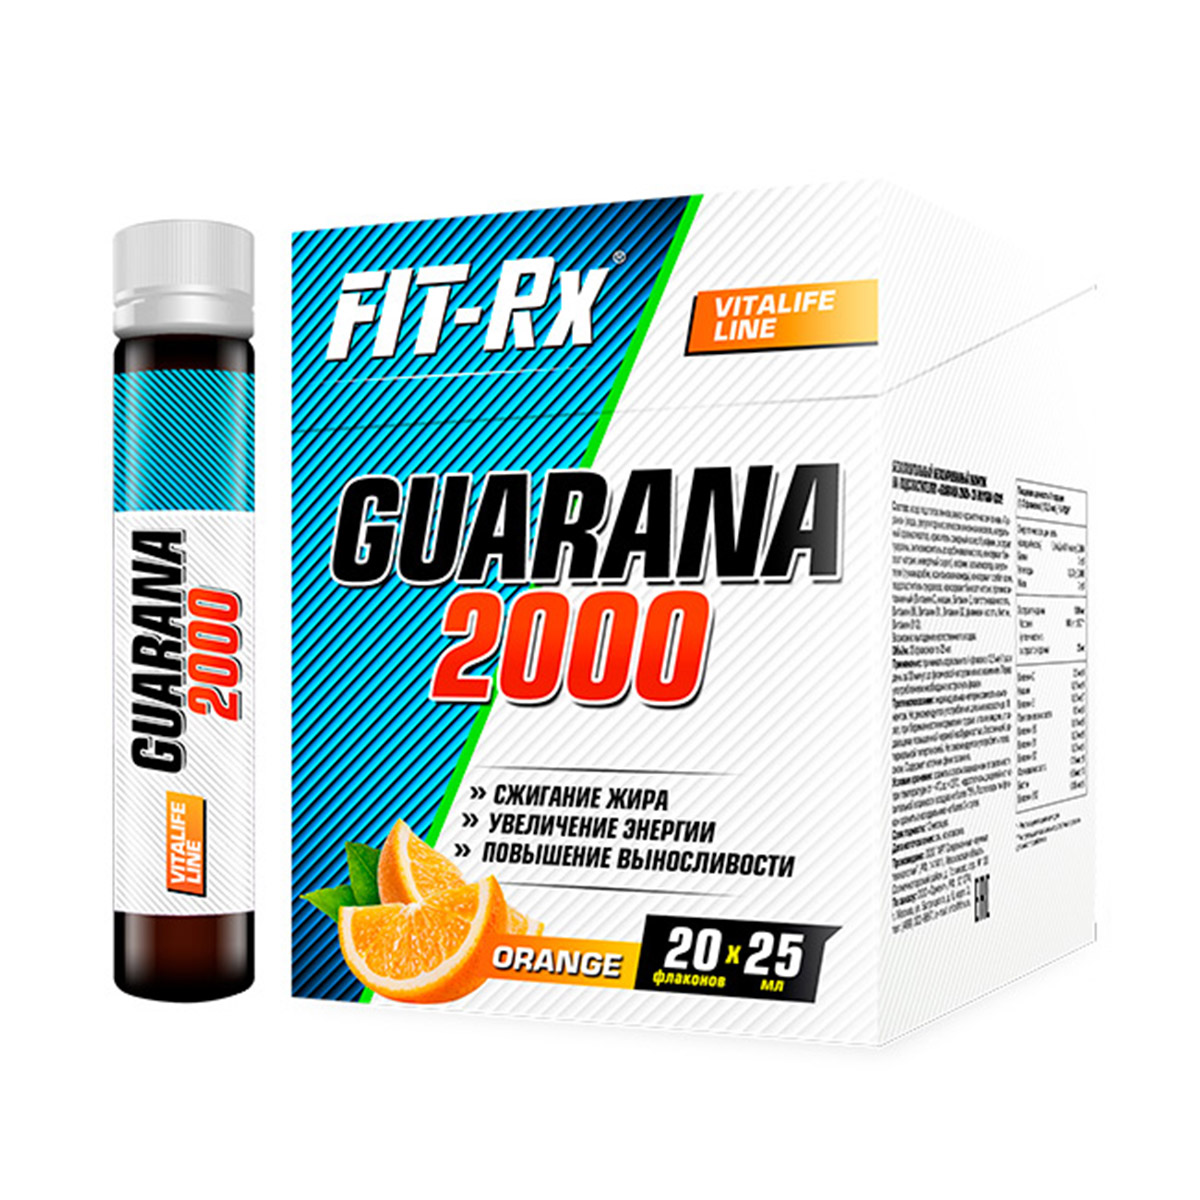 Гуарана спортивное питание. Fit-RX Guarana 2000 25 мл. Fit- RX Guarana 2000 (20 амп х 25 мл) апельсин .. Гуарана Fit RX 2000. Sporttech Guarana 2000.